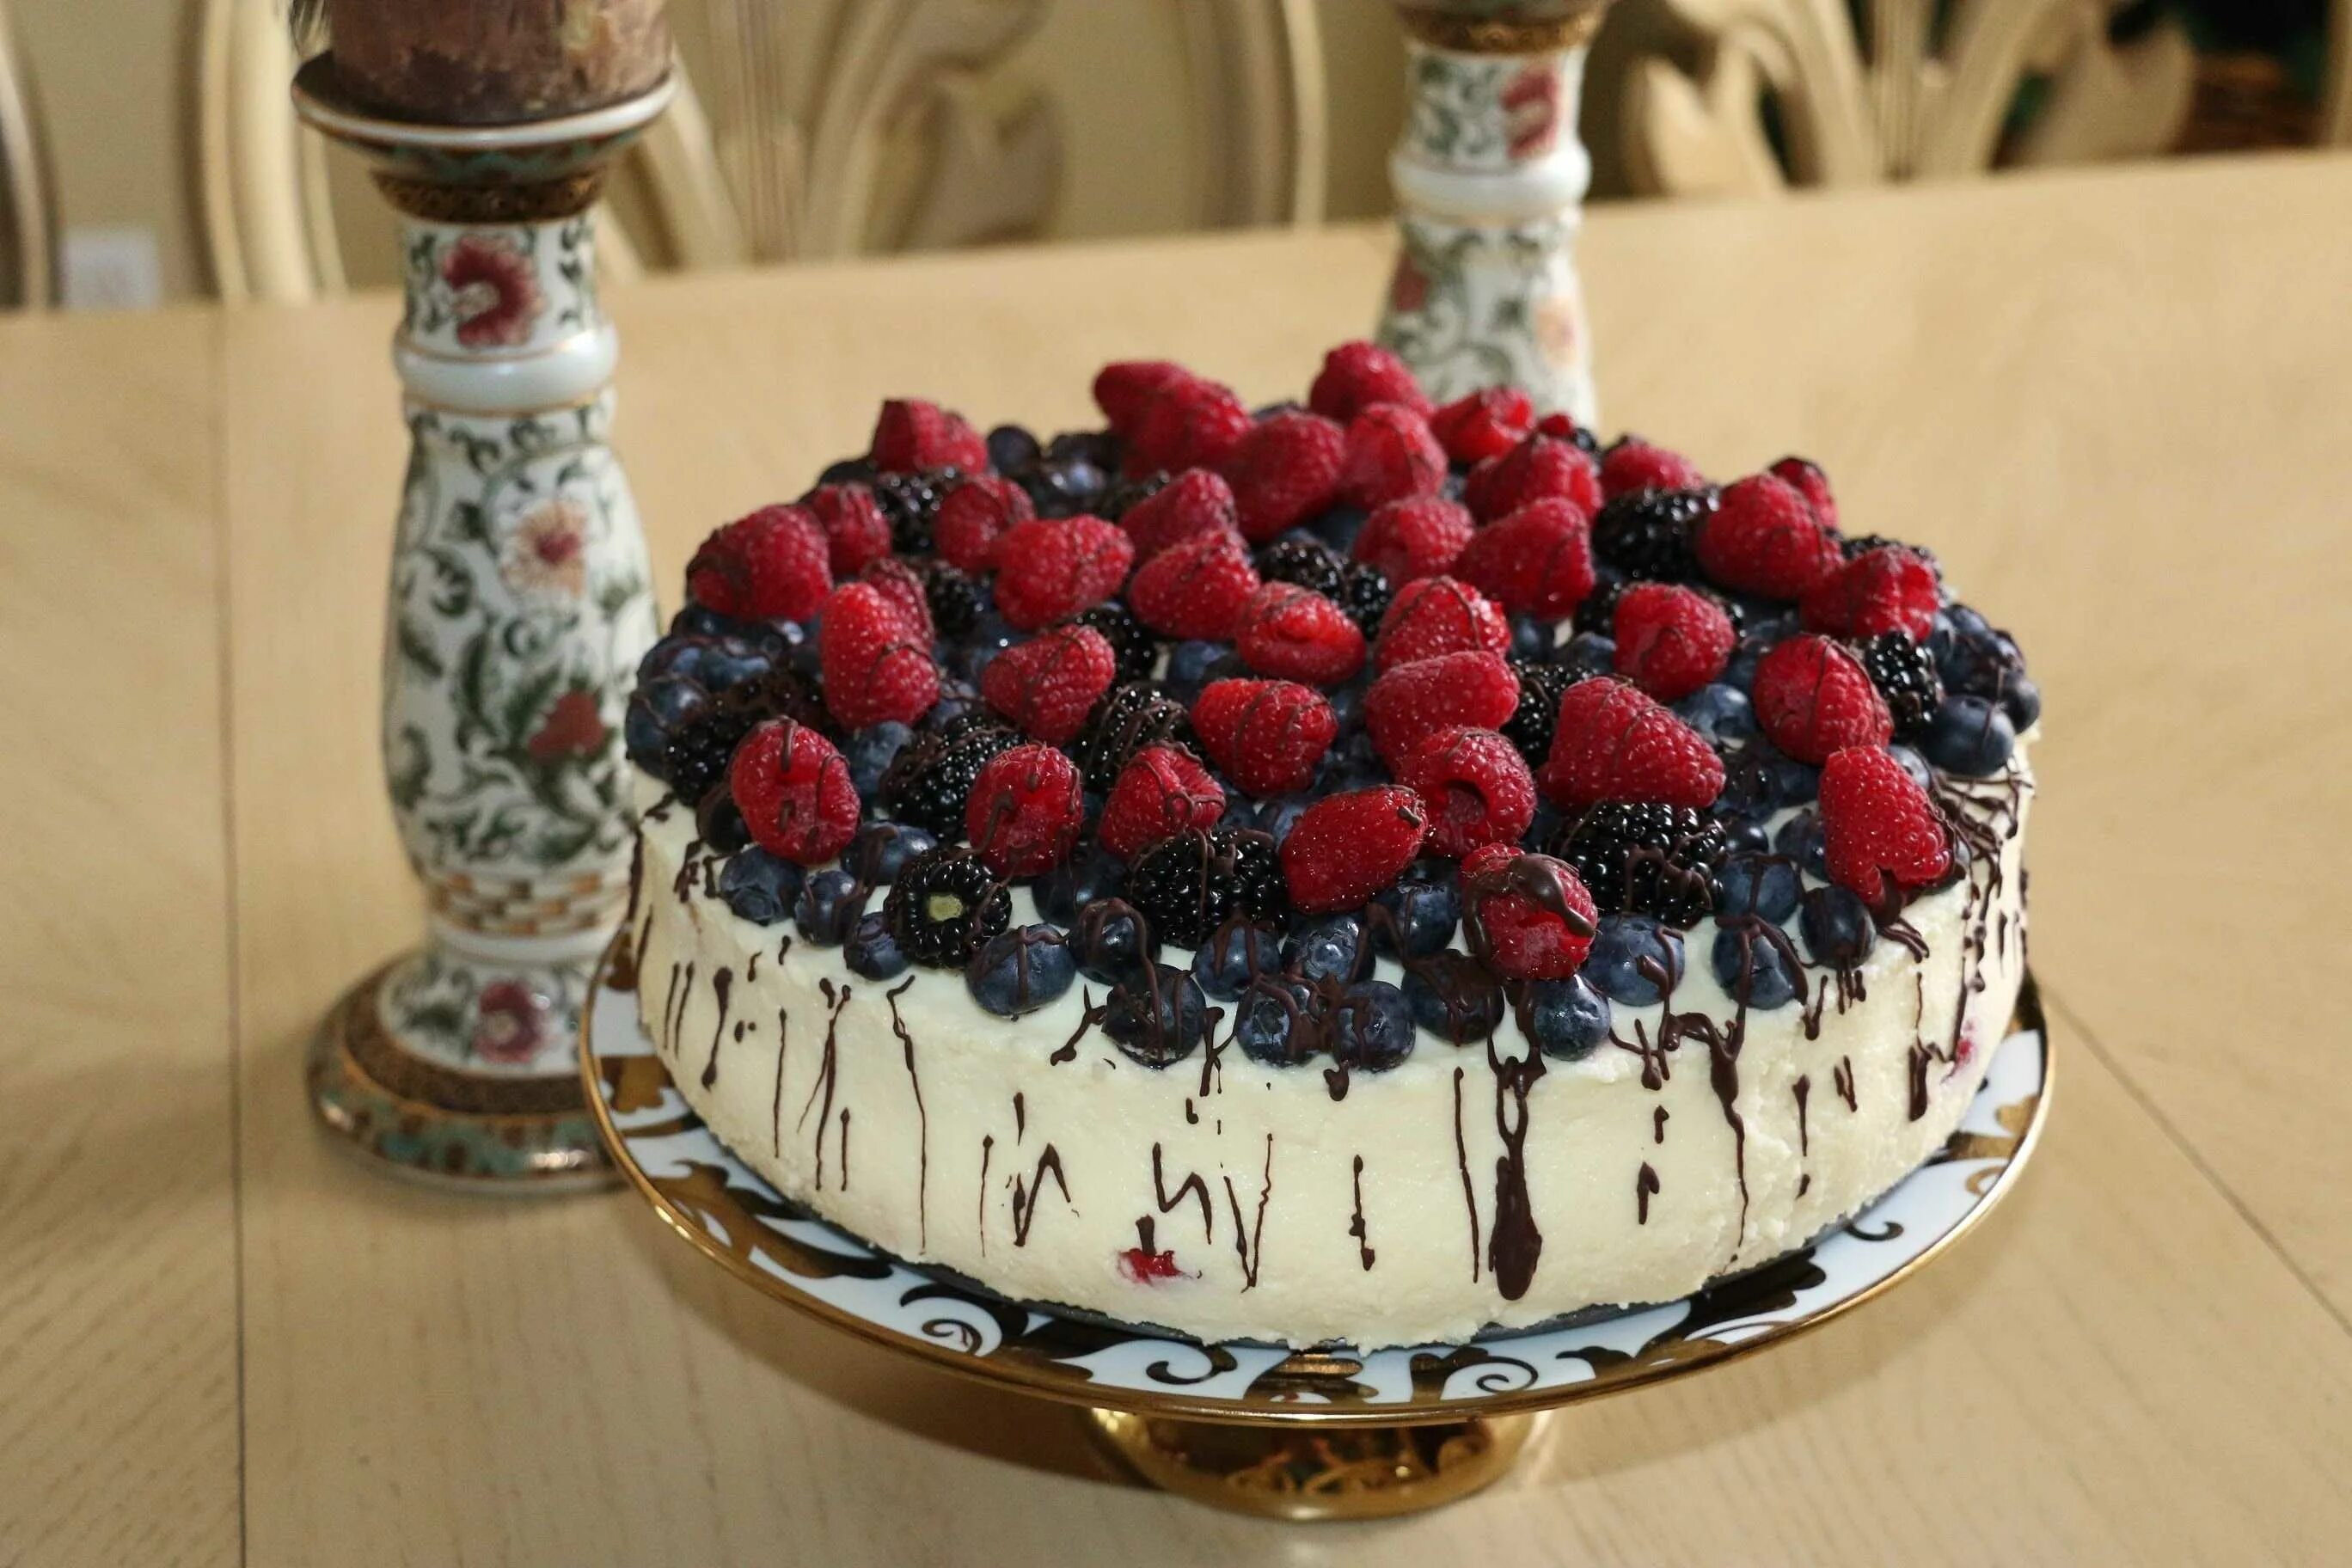 Где красивый торт. Украшение торта ягодами. Торт с ягодами. Украшение торта ягодами и шоколадом. Украшение торта фруктами и ягодами.